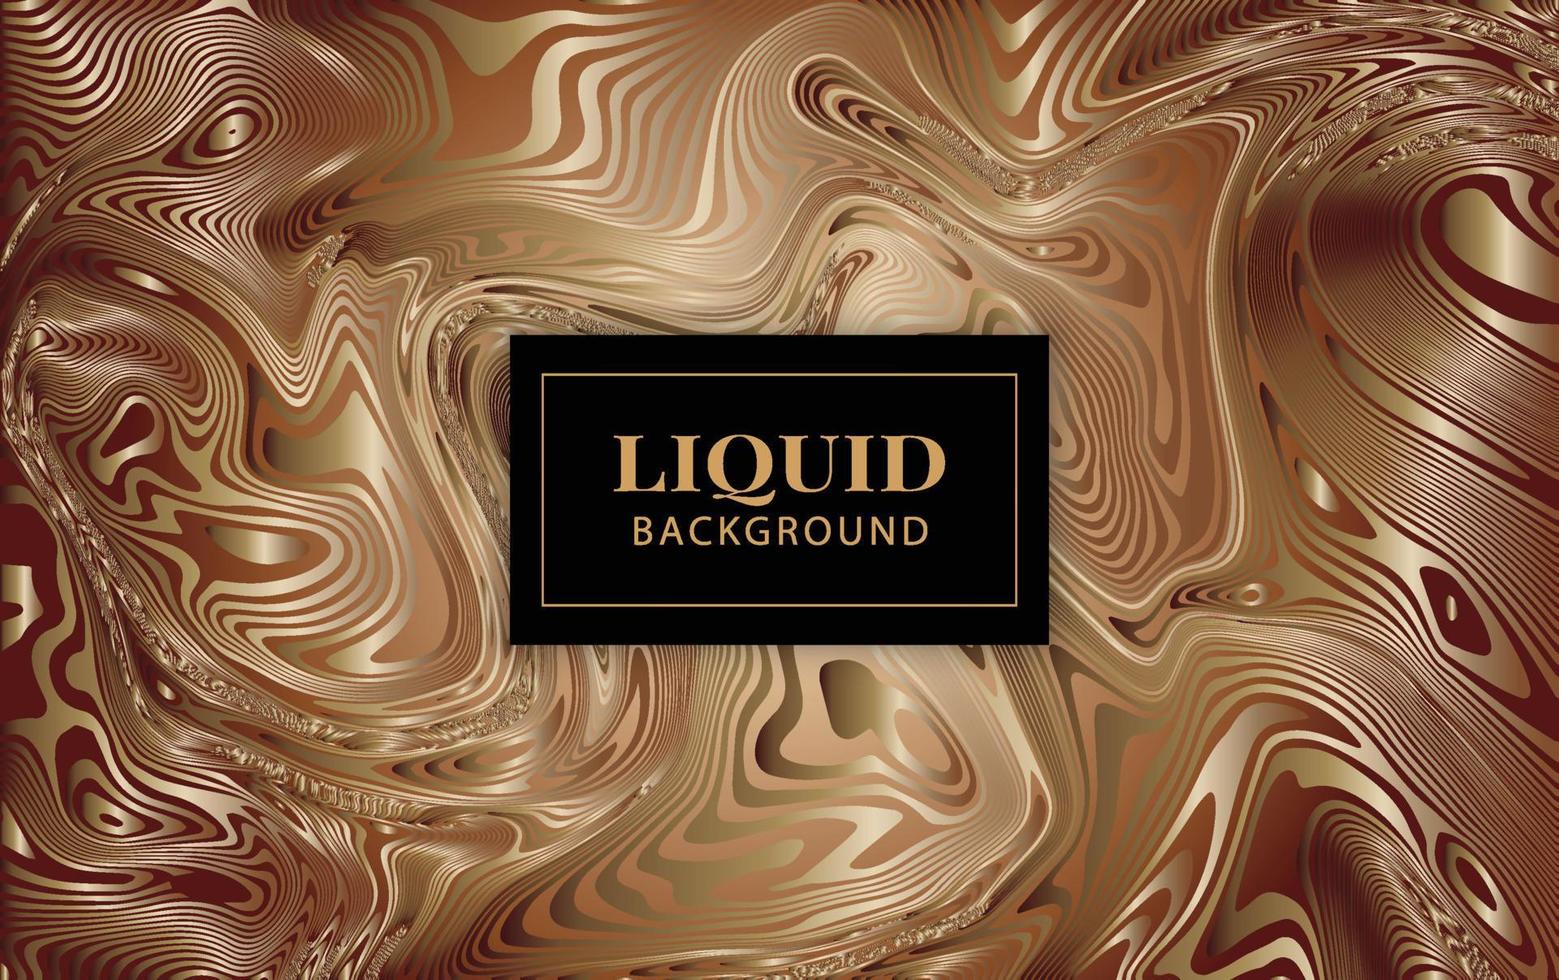 Golden Liquid wallpaper texture, Golden elegant background vector